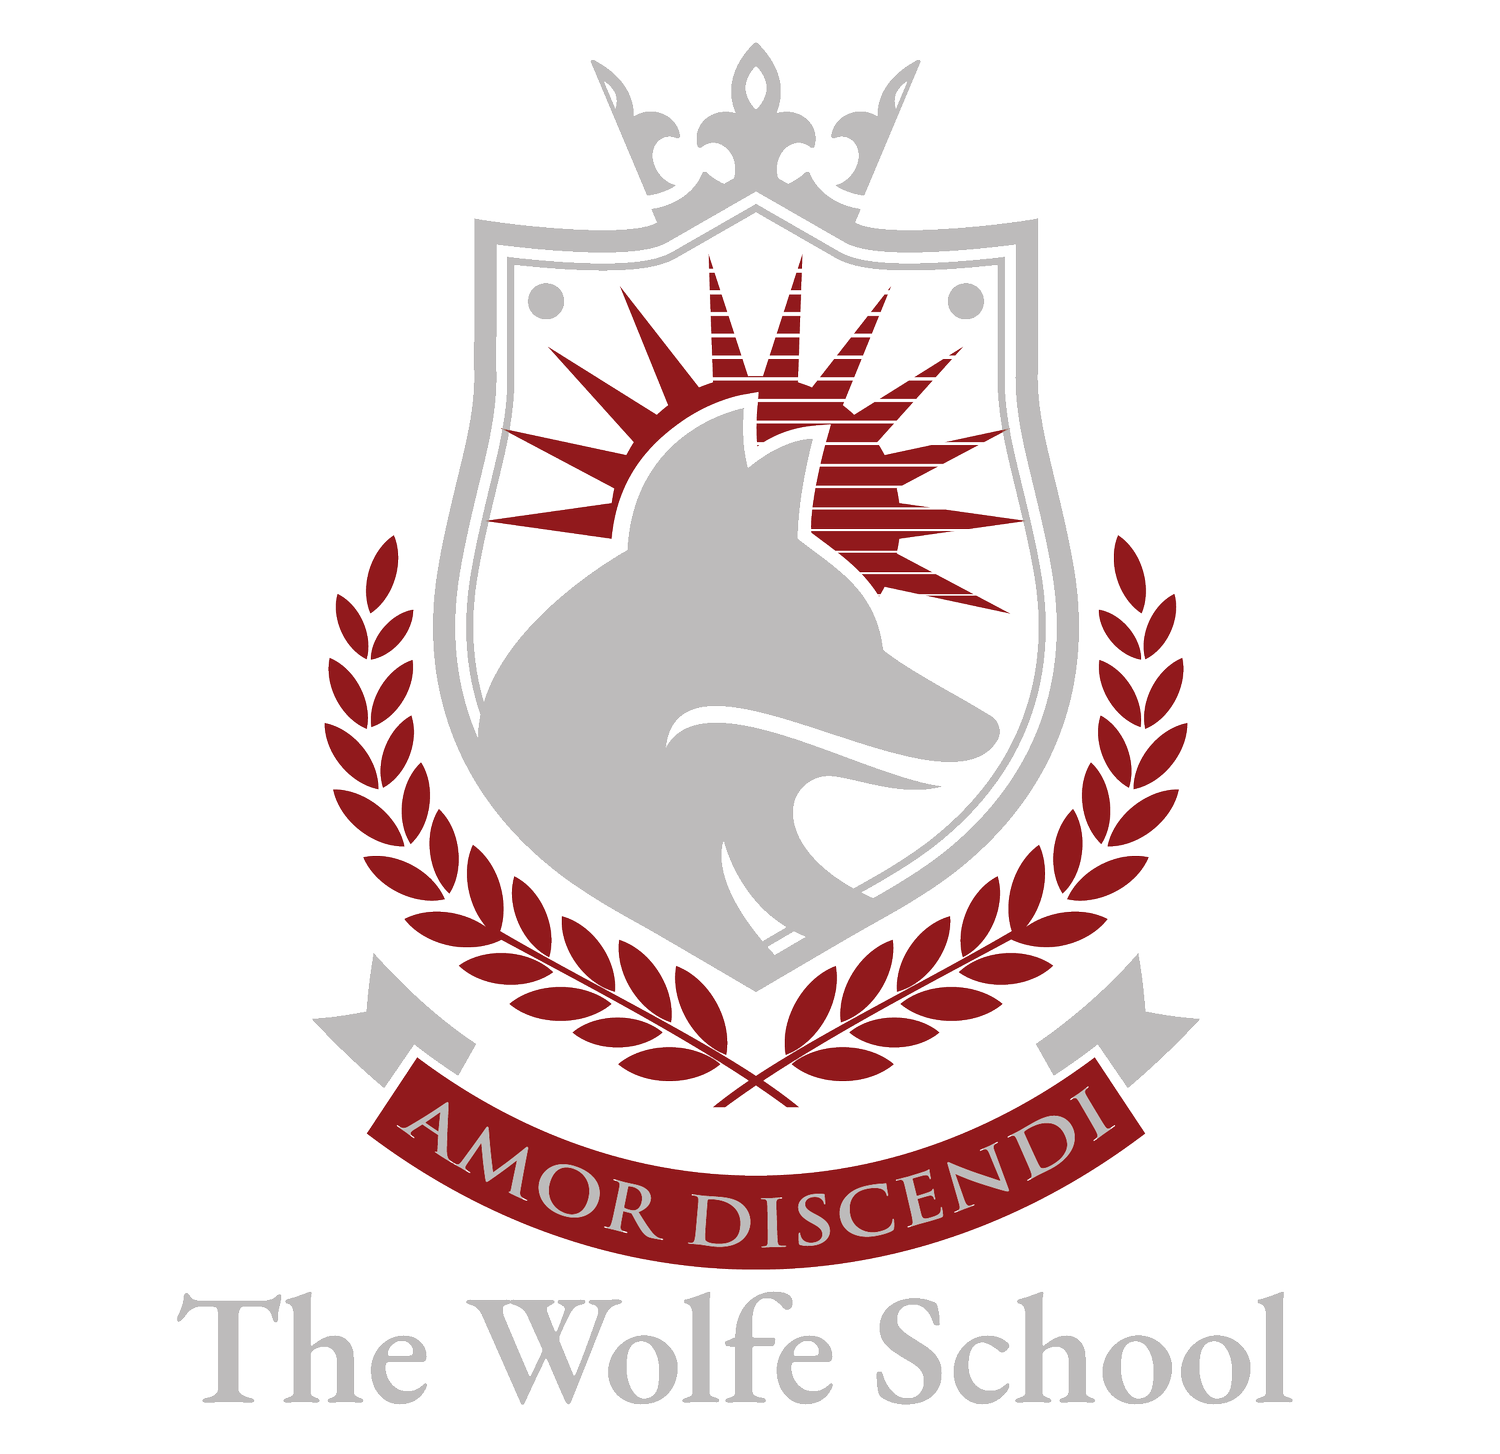 The Wolfe School